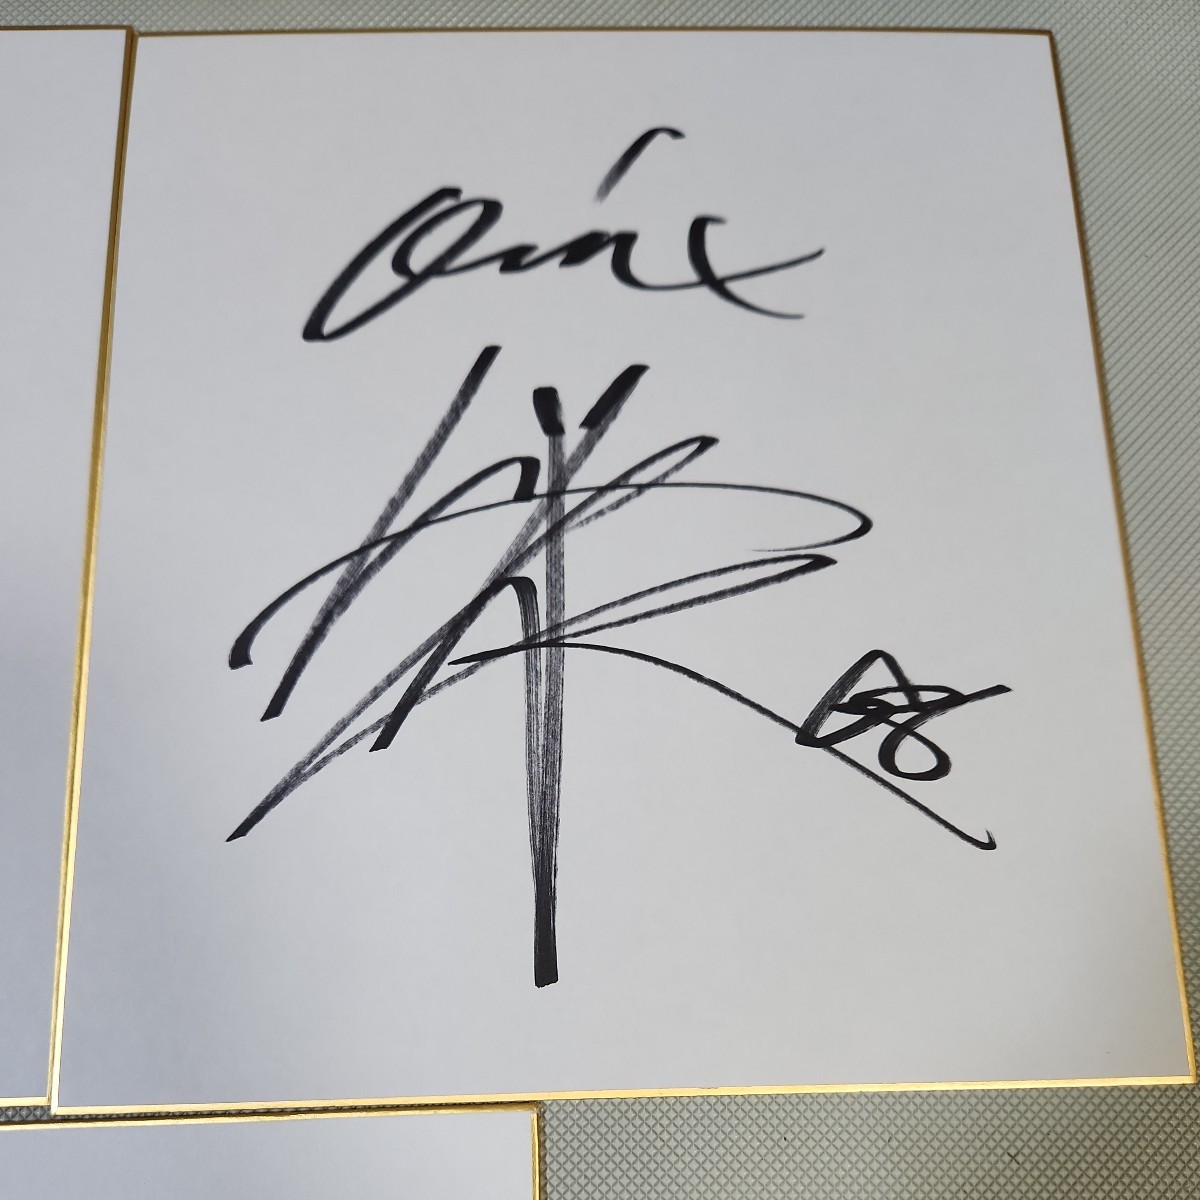  Orix Buffaloes autograph autograph square fancy cardboard 3 pieces set 